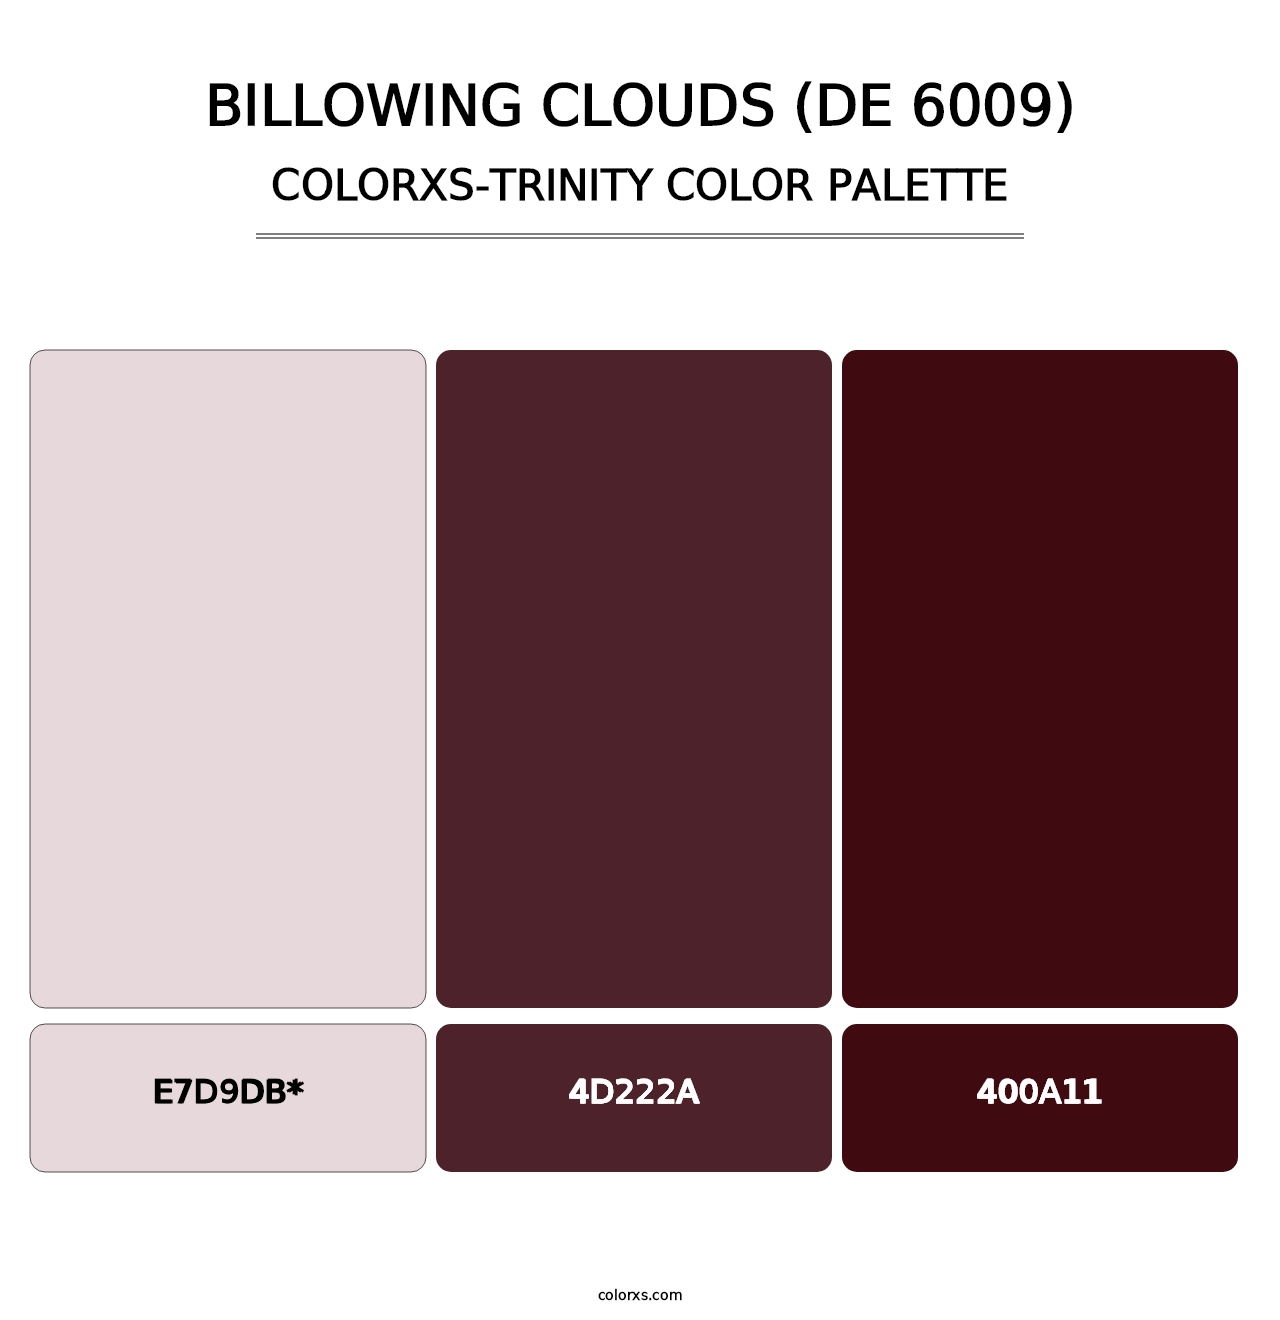 Billowing Clouds (DE 6009) - Colorxs Trinity Palette